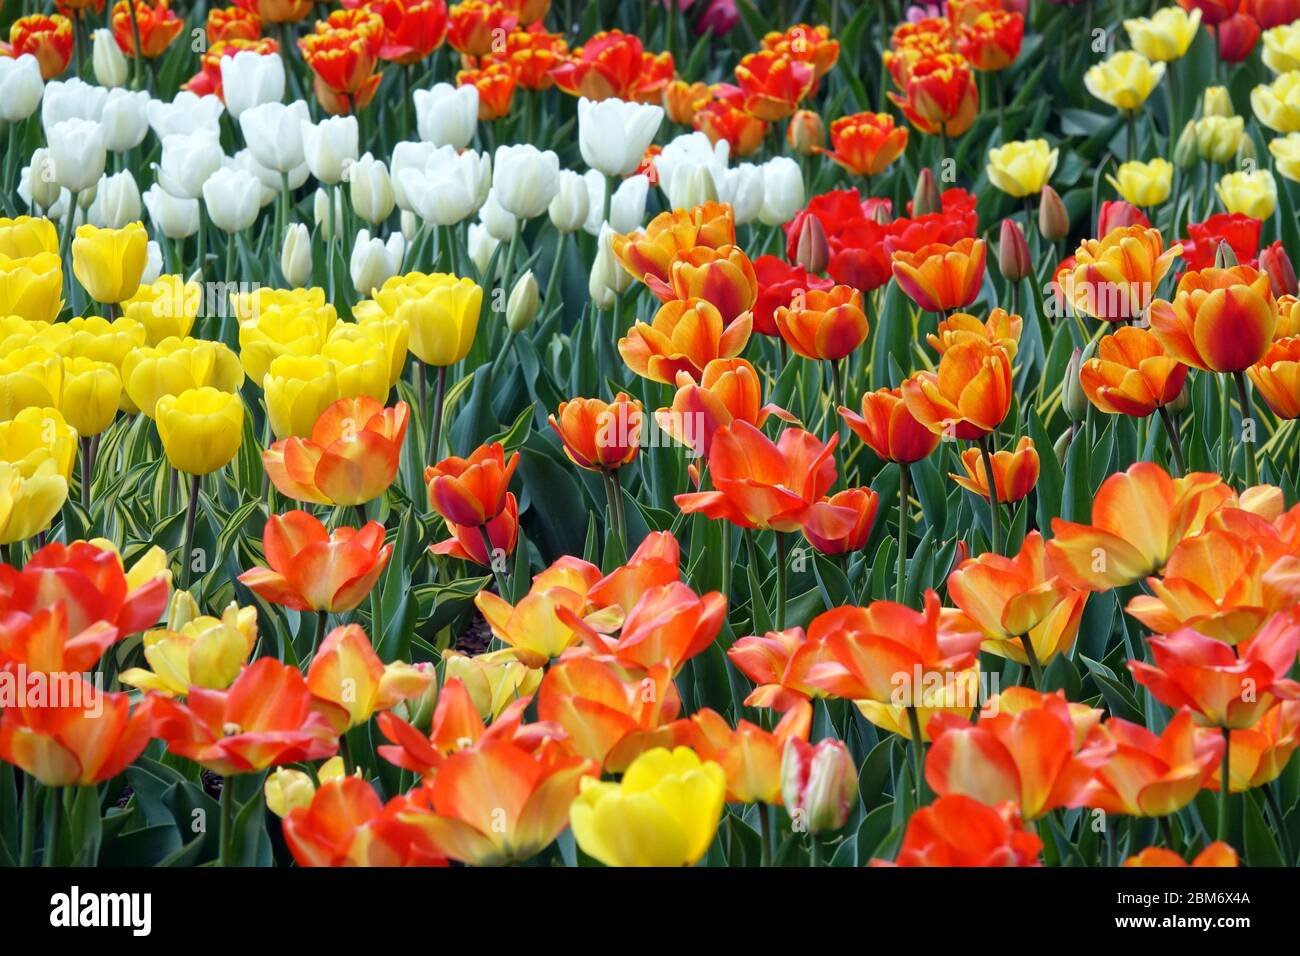 Tulipani colorati giardino letto fiori arancio giallo misto fiori misto arancione giallo bianco Foto Stock